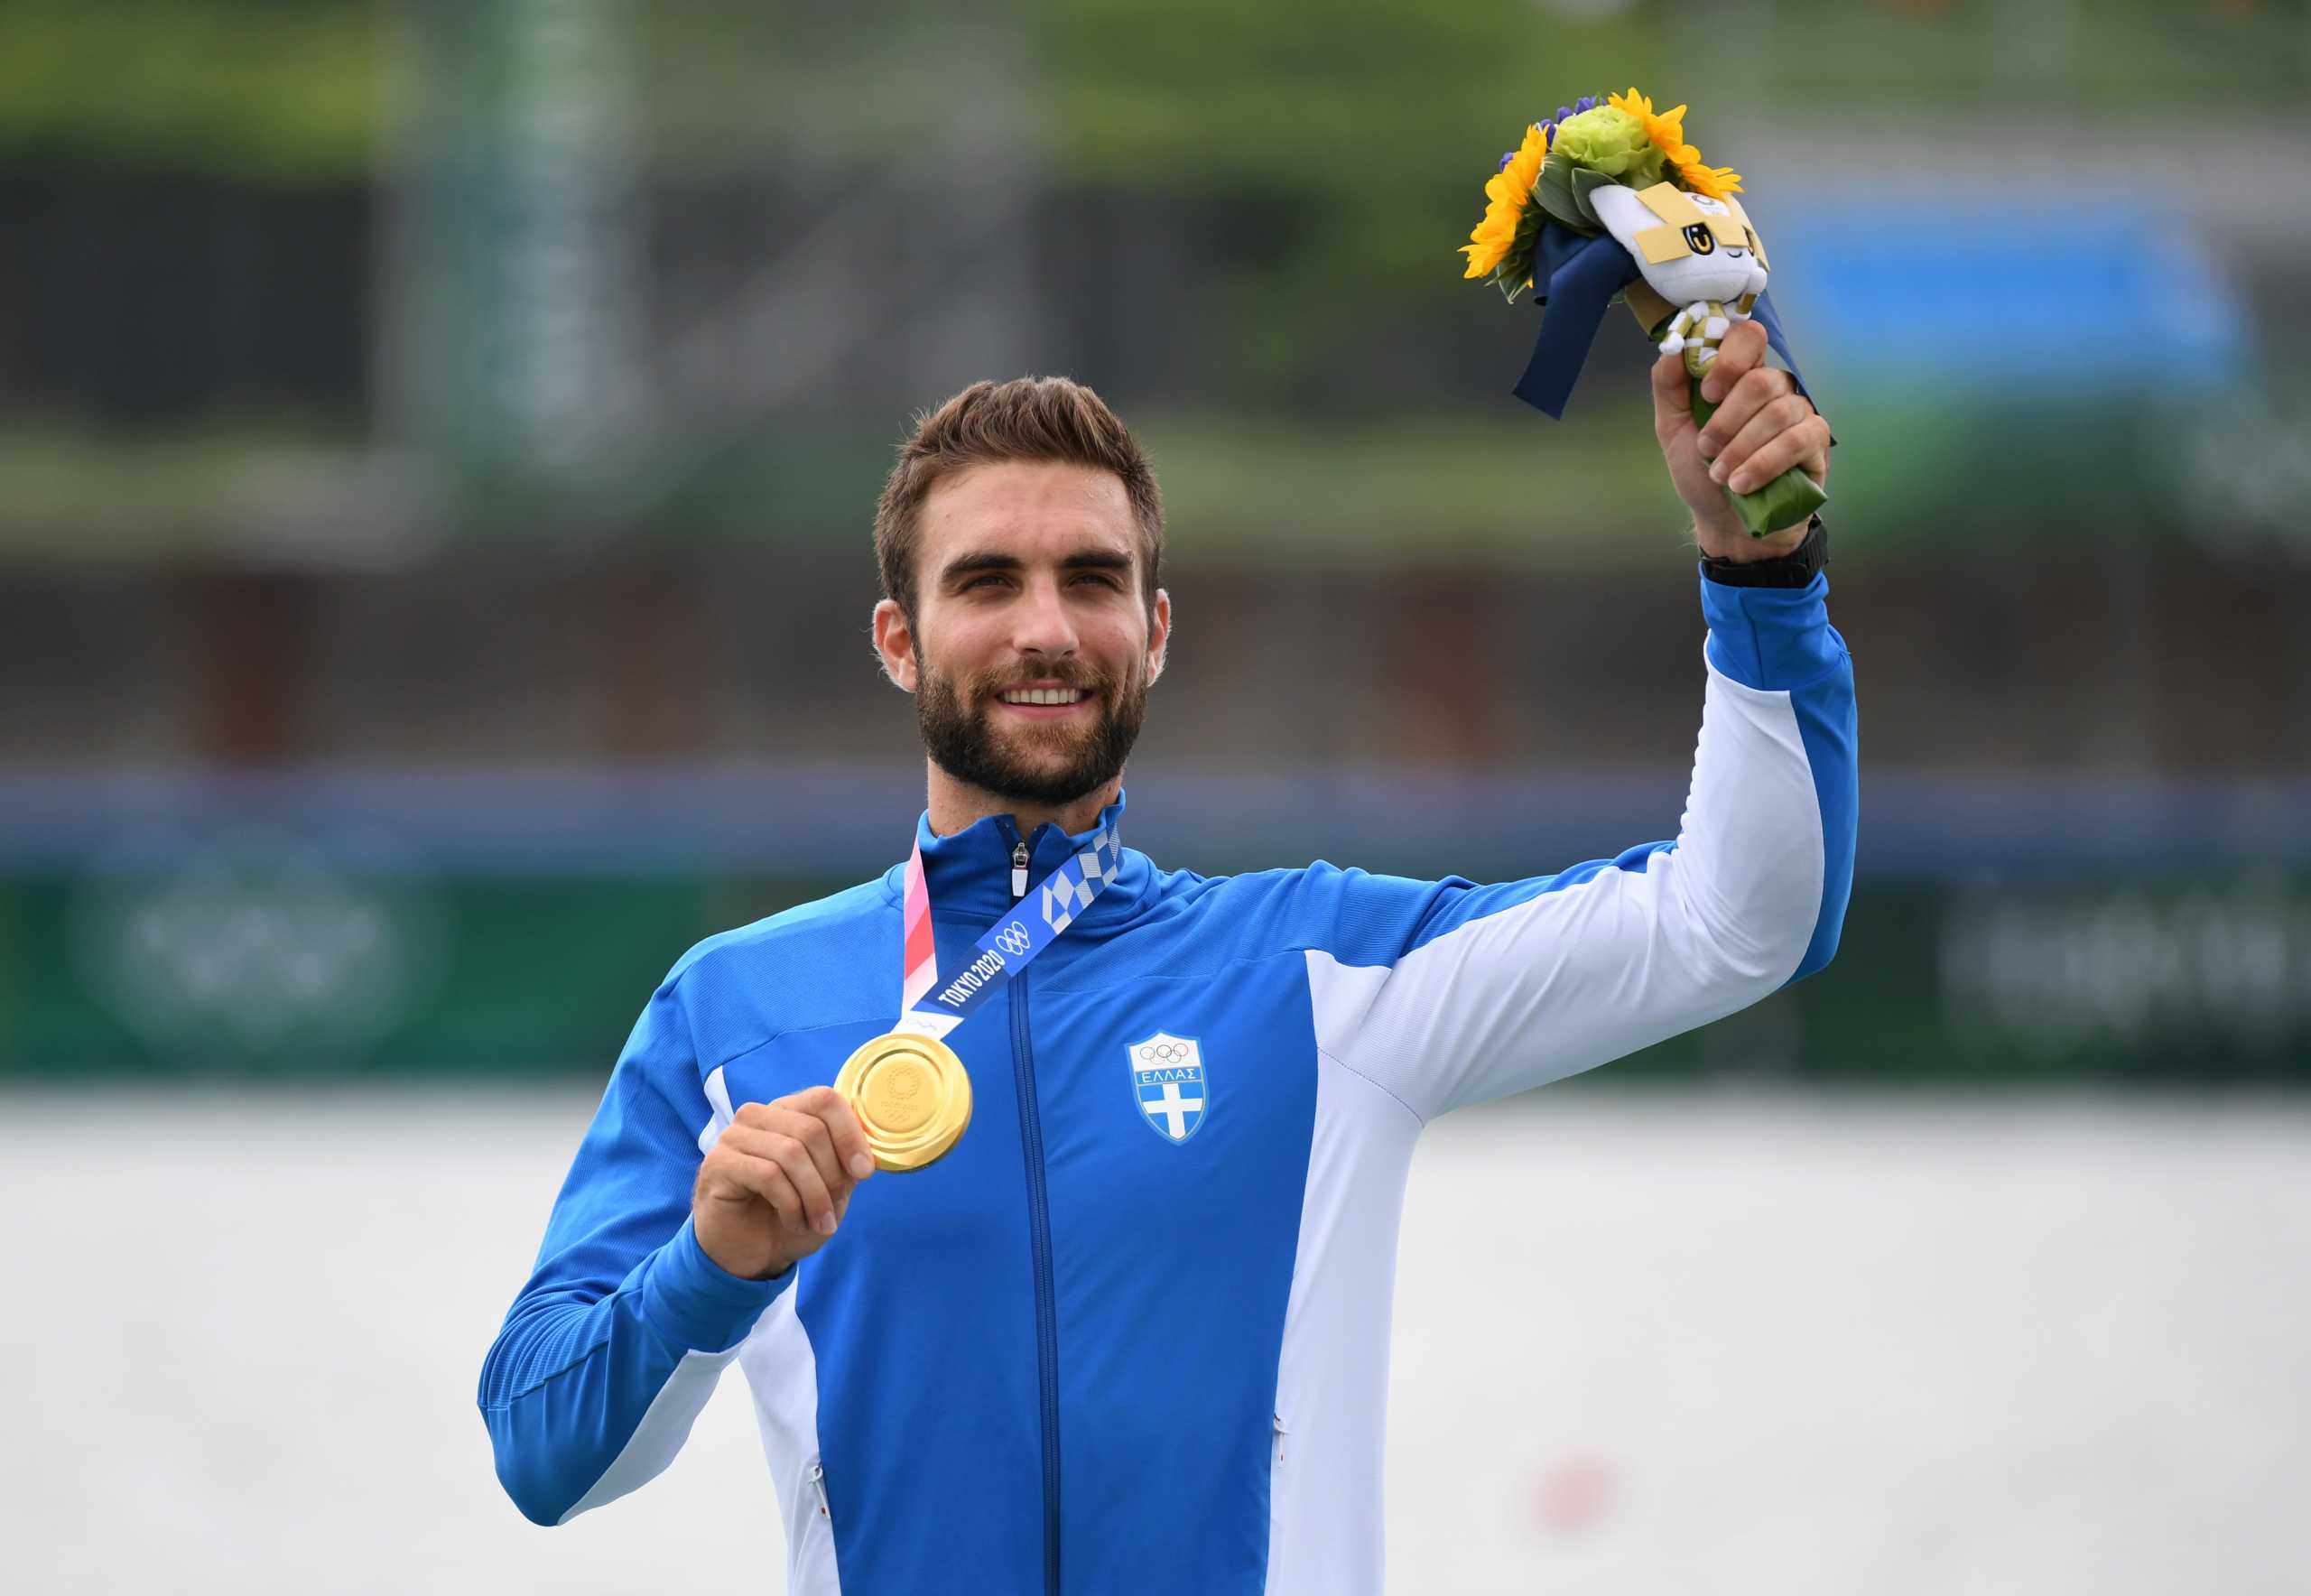 Σ.Ντούσκος: Ο 34ος Έλληνας που κατακτά χρυσό μετάλλιο σε Ολυμπιακούς Αγώνες – Ποιοι πήραν τα υπόλοιπα